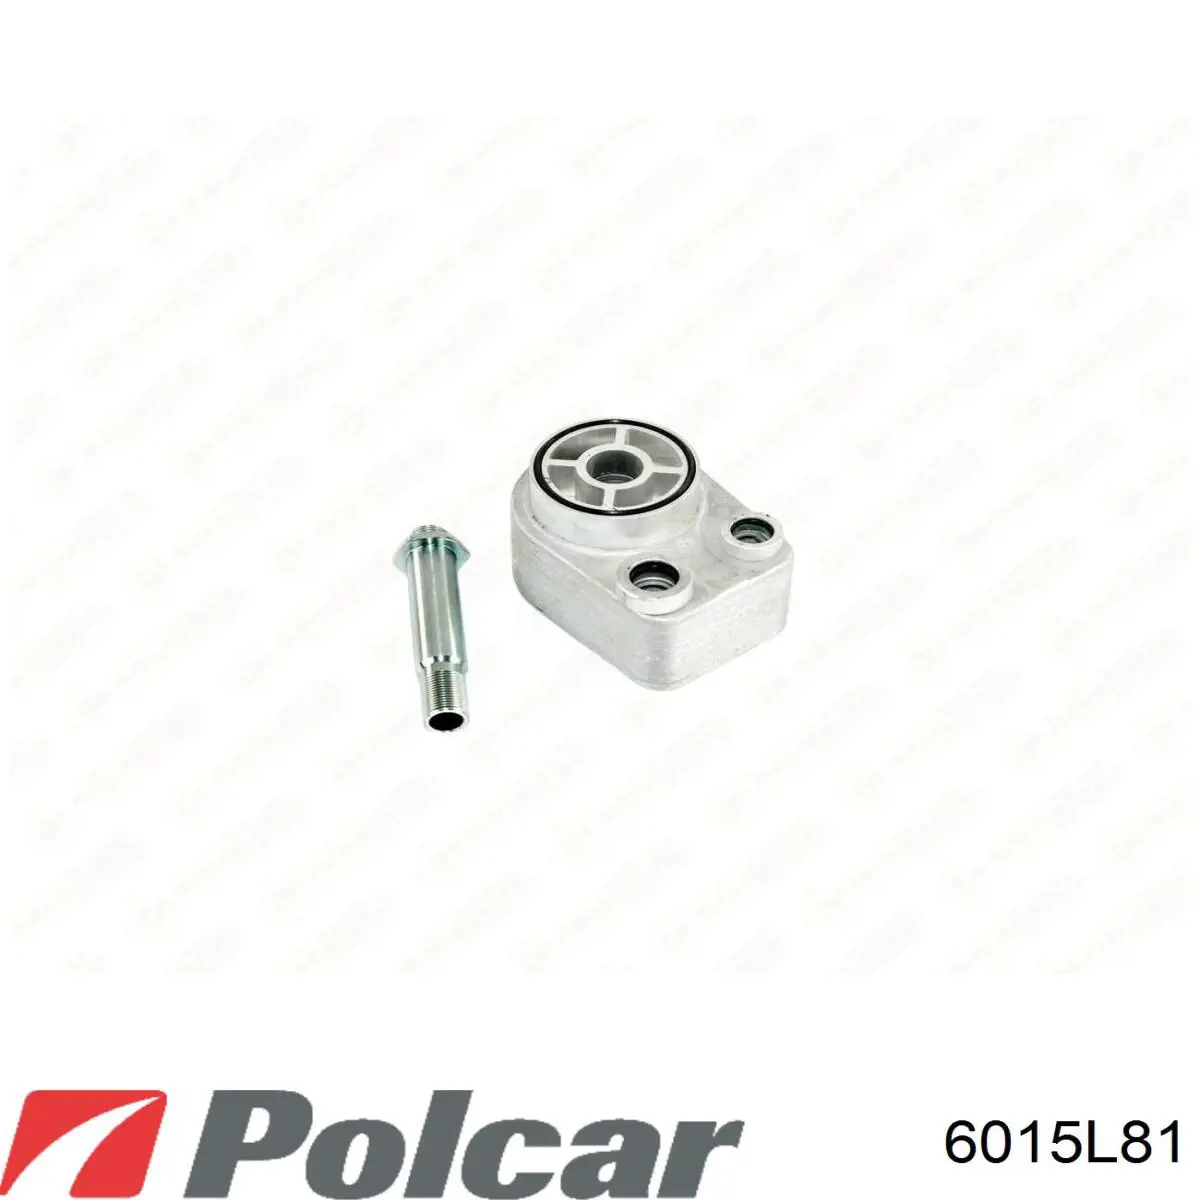 6015L81 Polcar радиатор масляный (холодильник, под фильтром)